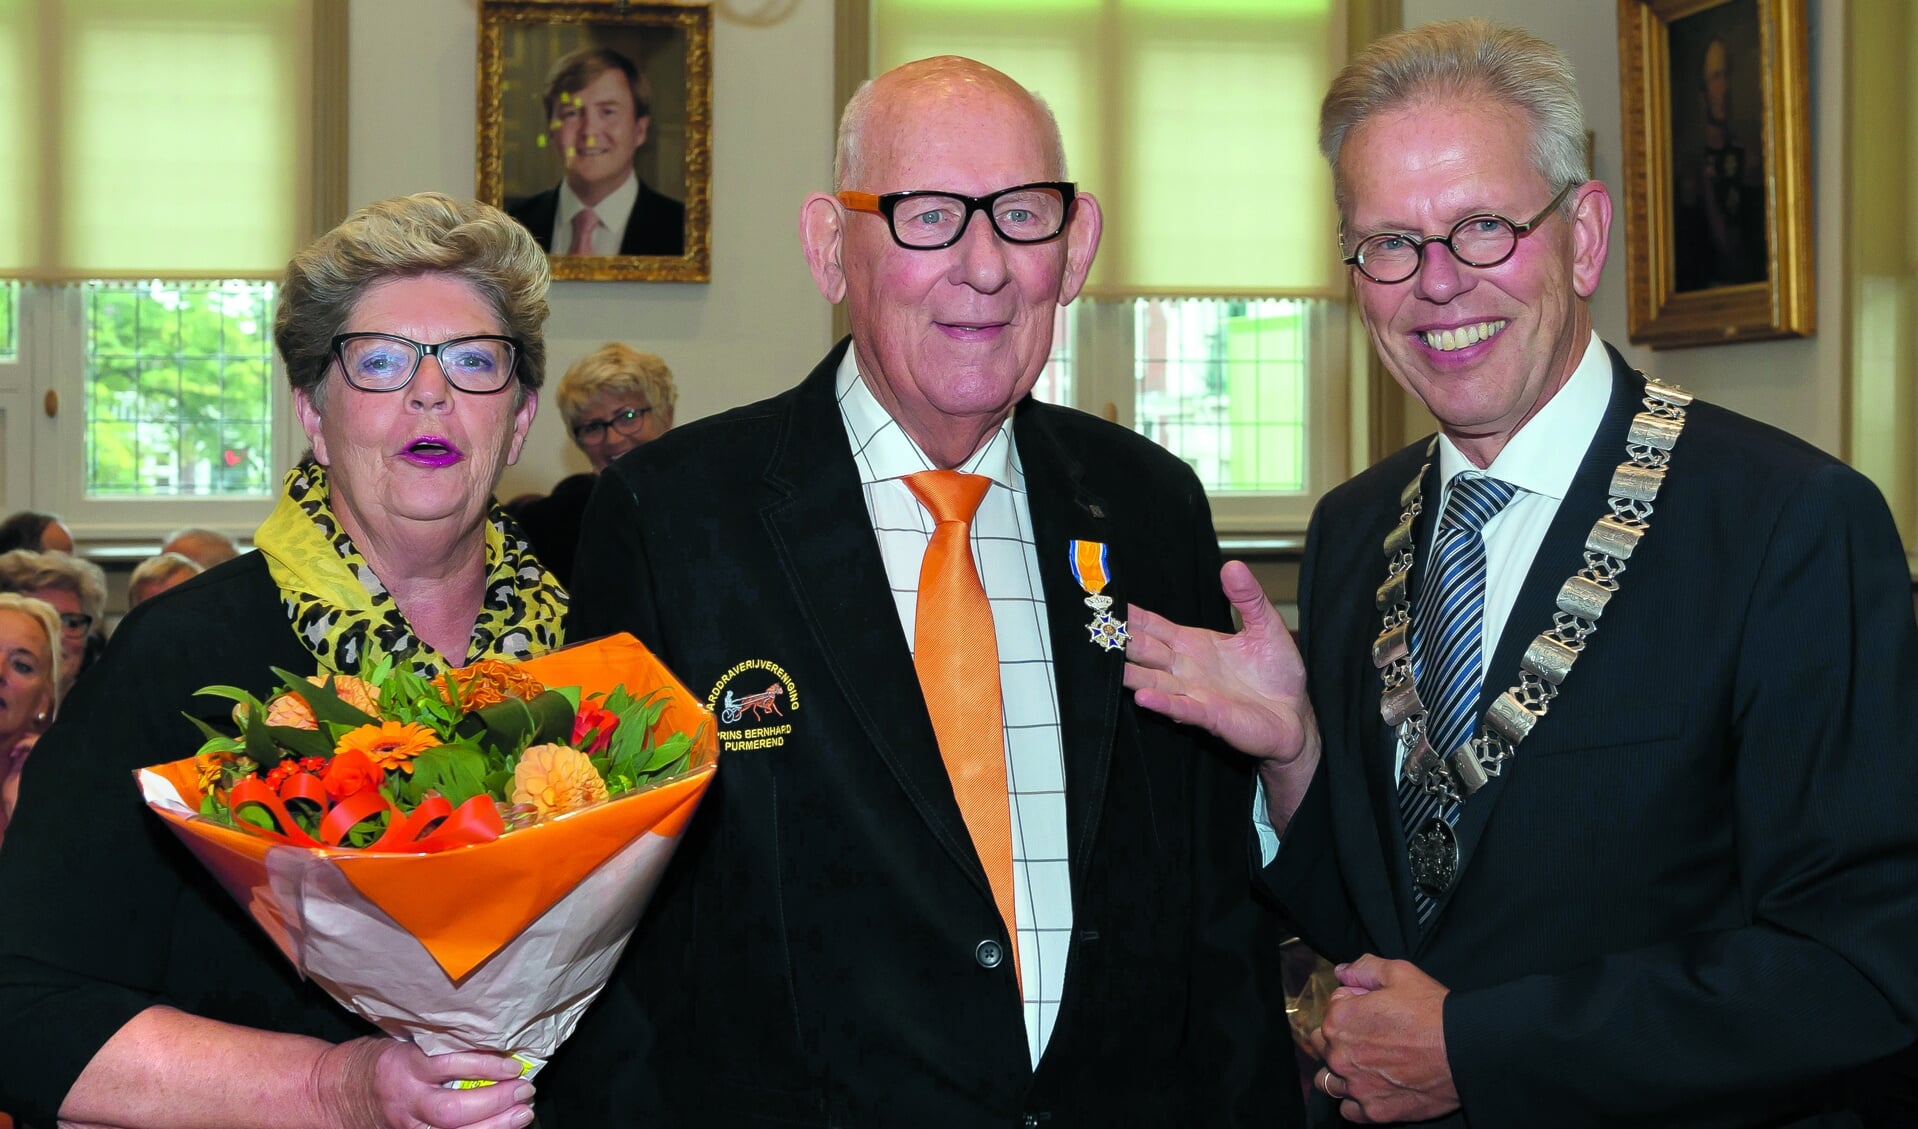 Jan Kuiper, hier samen met zijn Grada en burgemeester Don Bijl, reageerde ontroerd nadat hem de versierselen waren opgespeld. (Foto: Han Giskes)